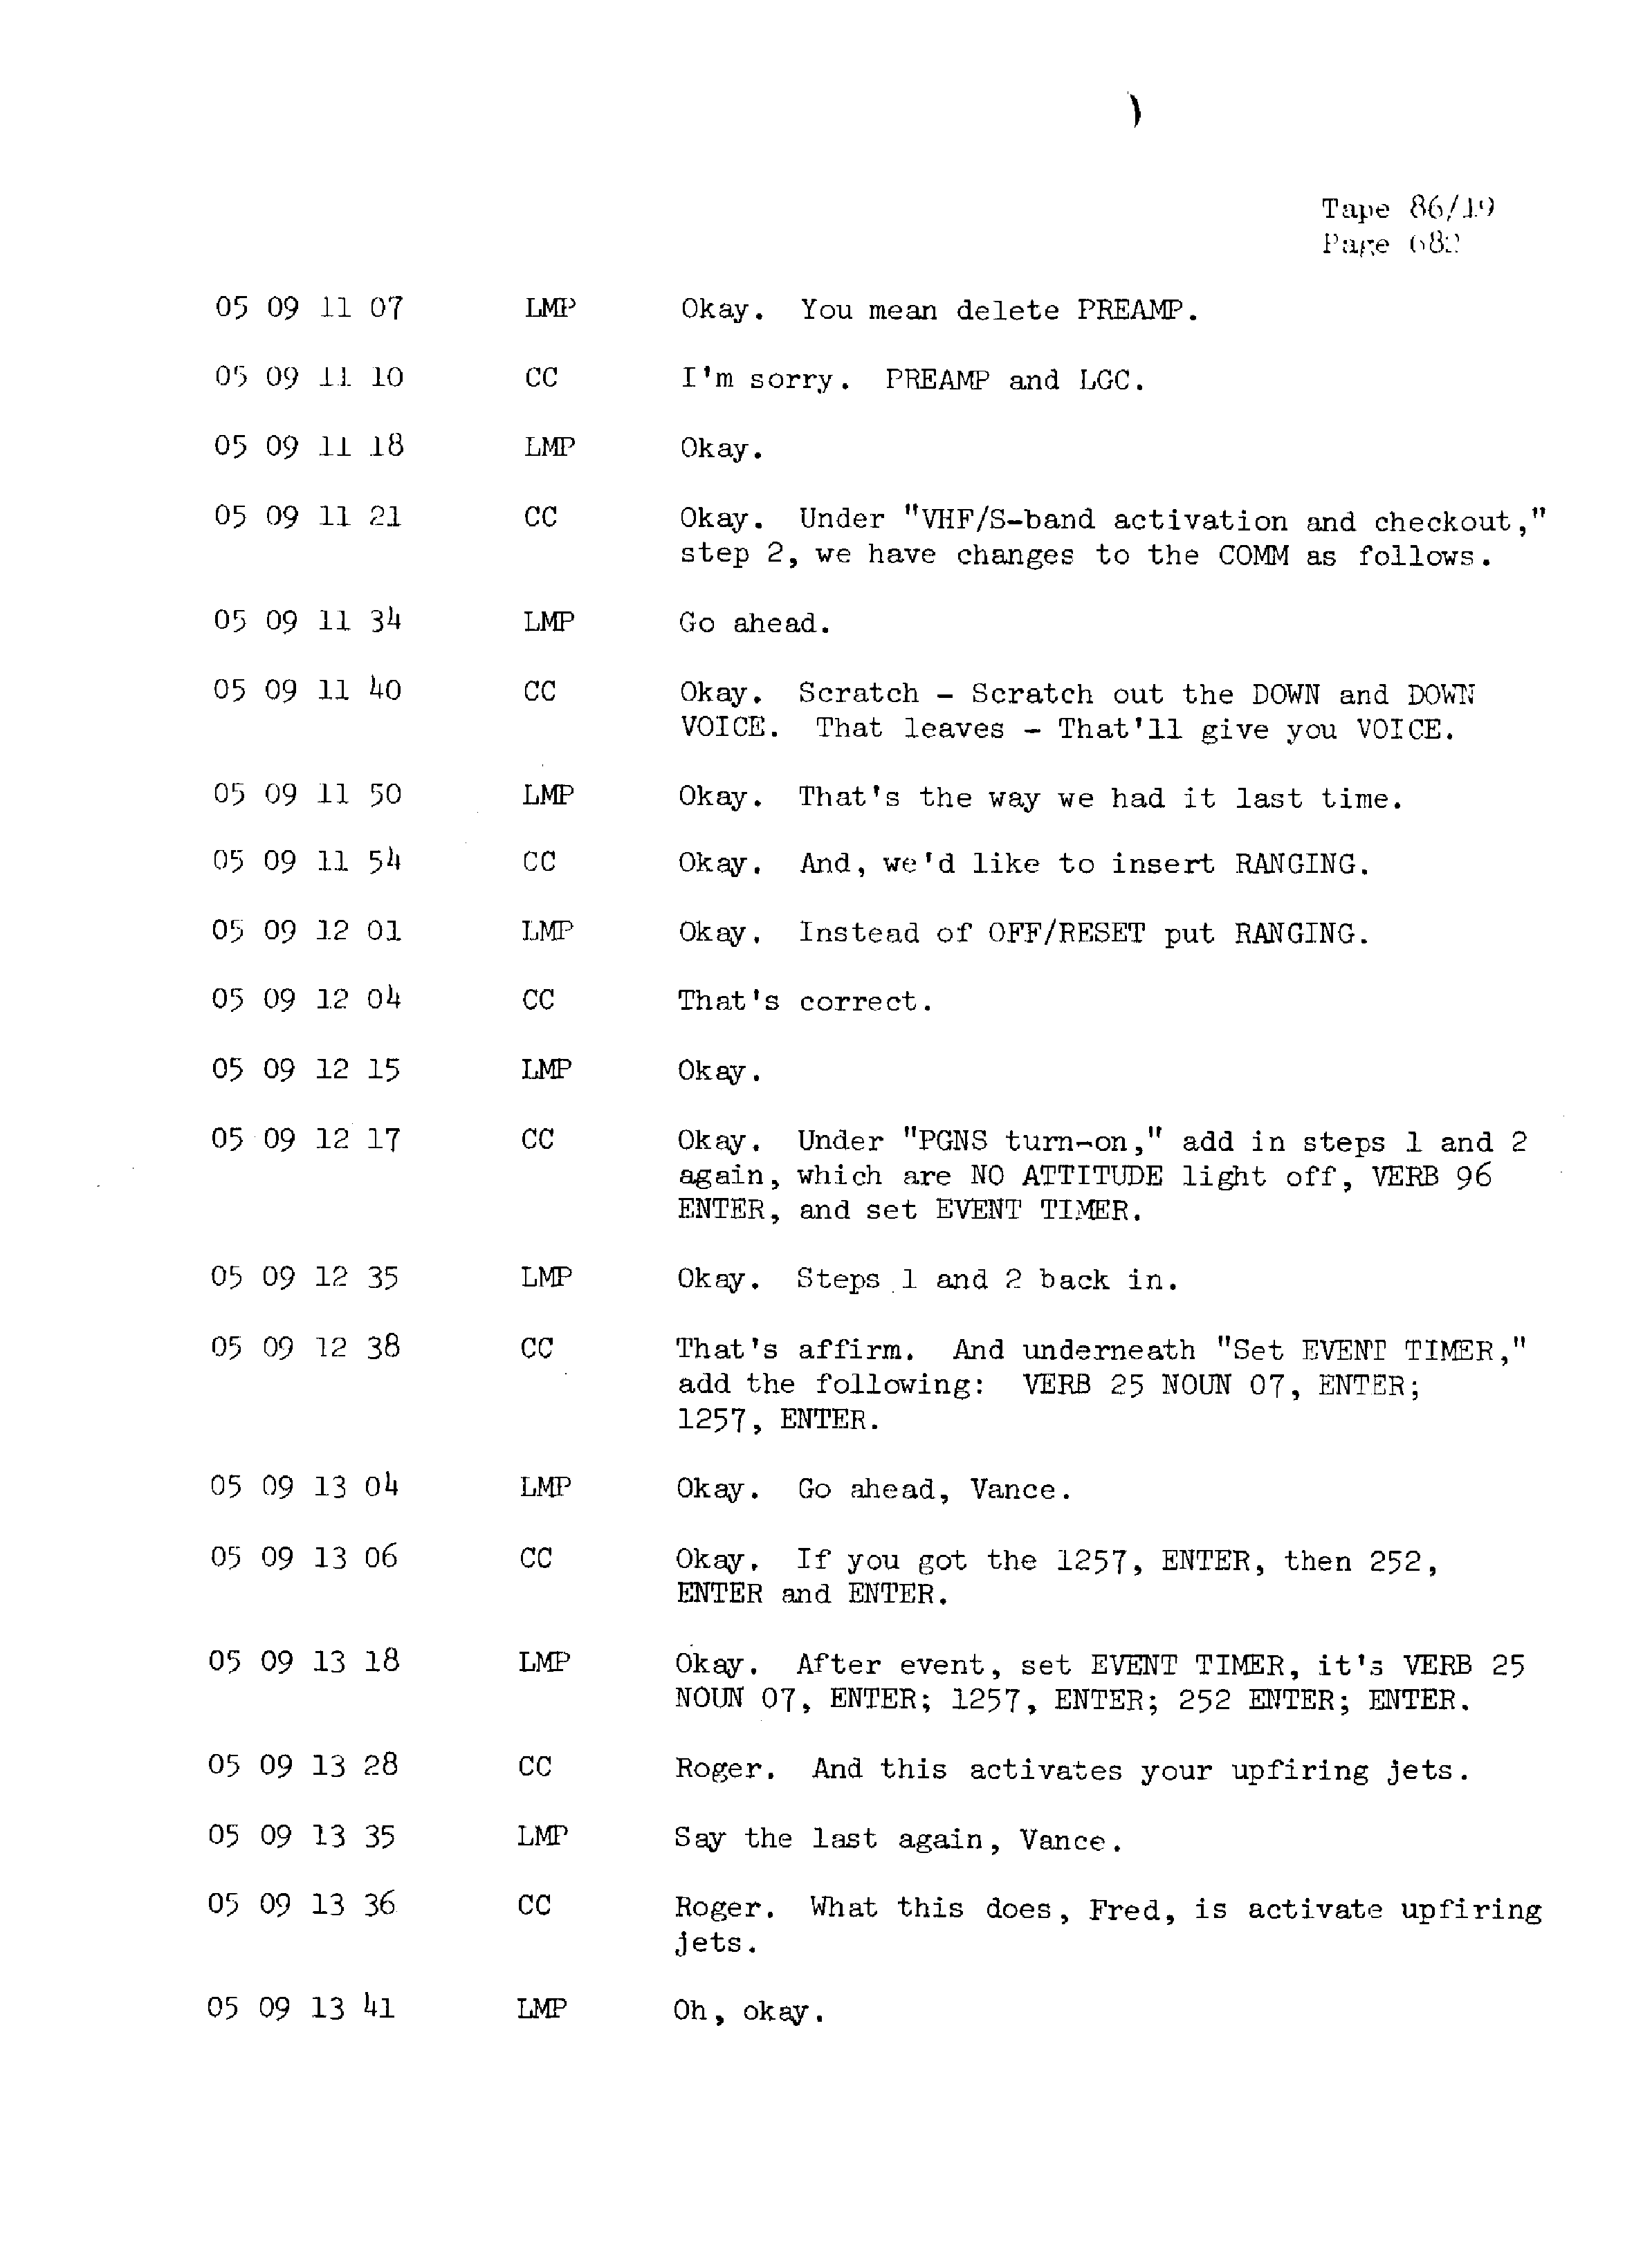 Page 689 of Apollo 13’s original transcript